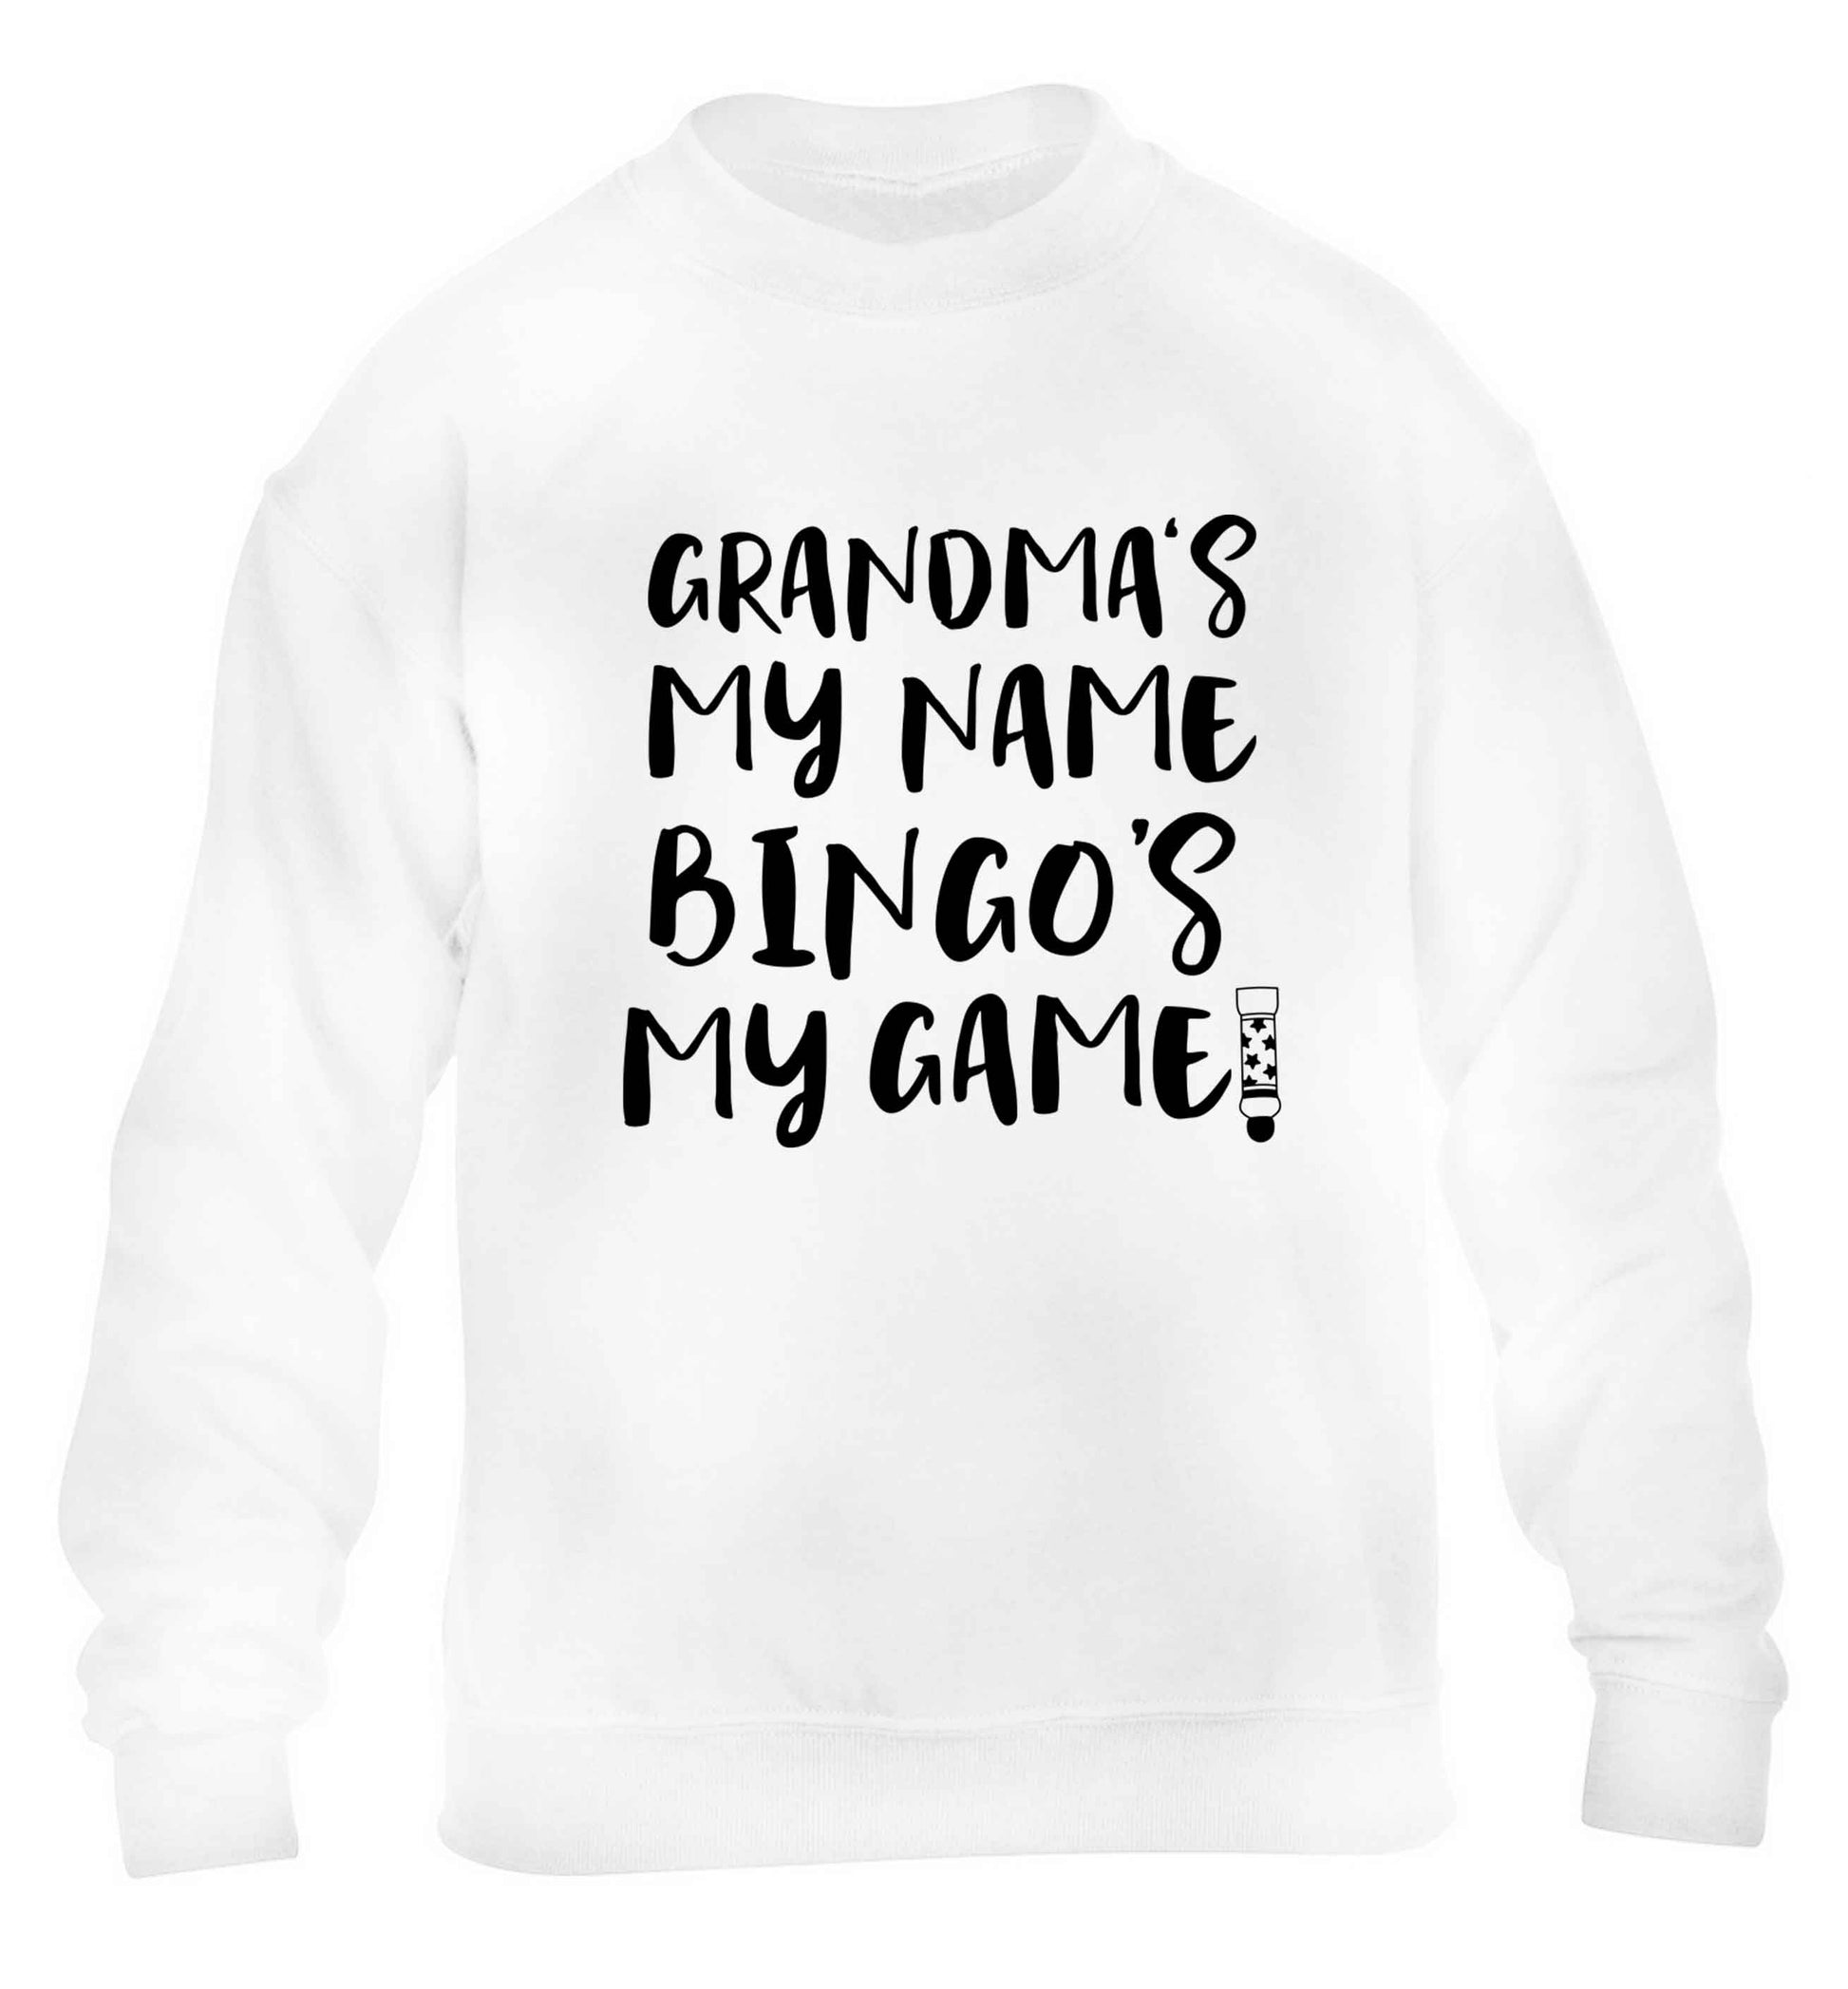 Grandma's my name bingo's my game! children's white sweater 12-13 Years